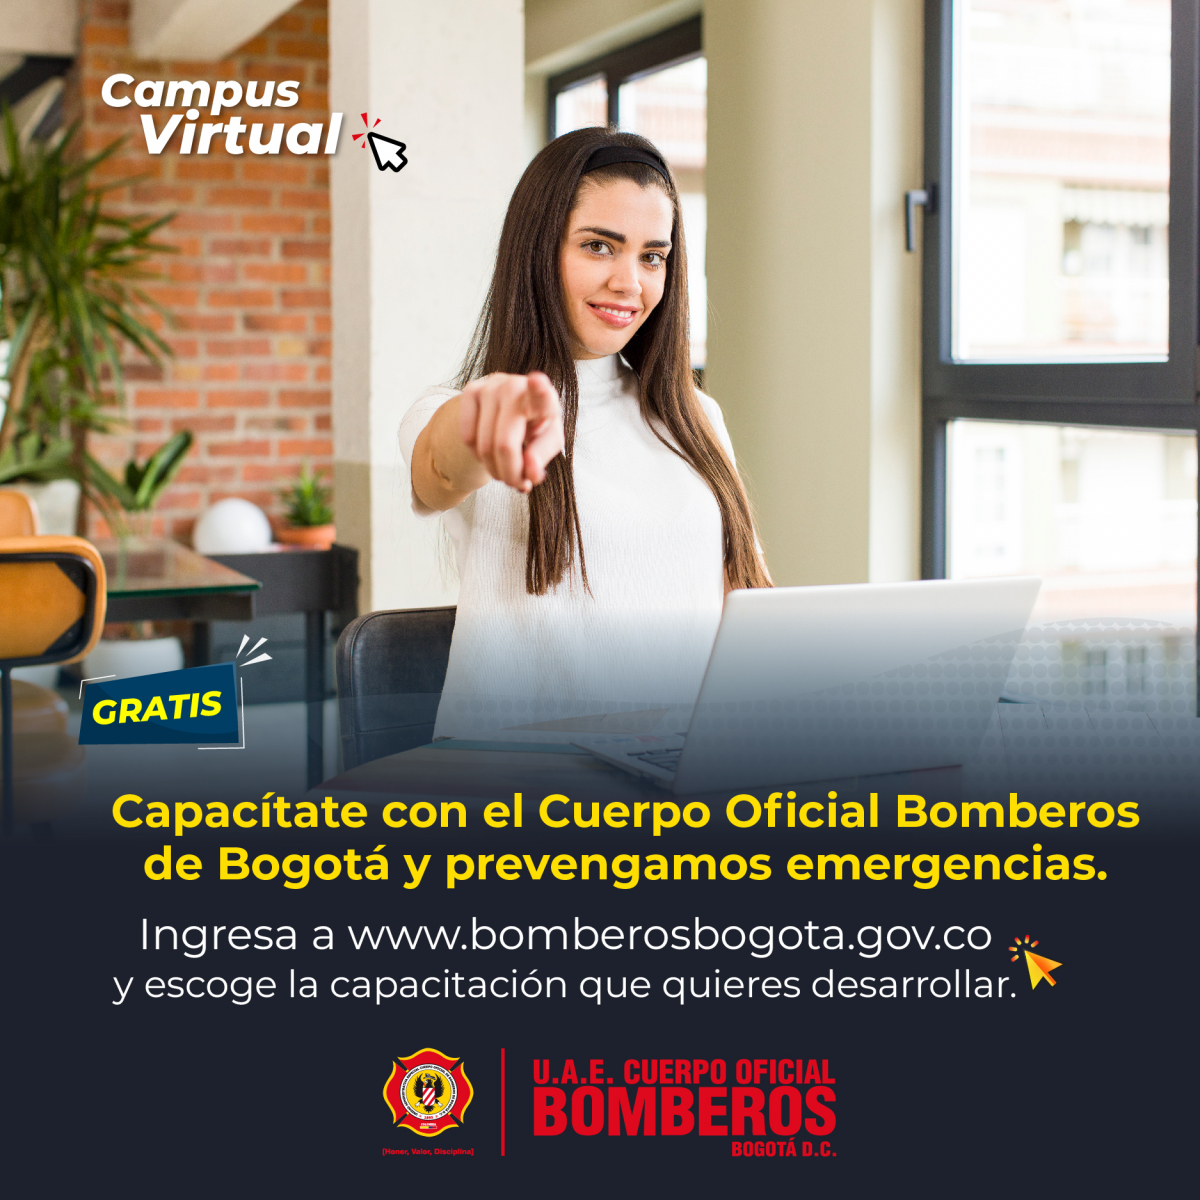 Capacitace con el Cuerpo Oficial de Bomberos Bogotá